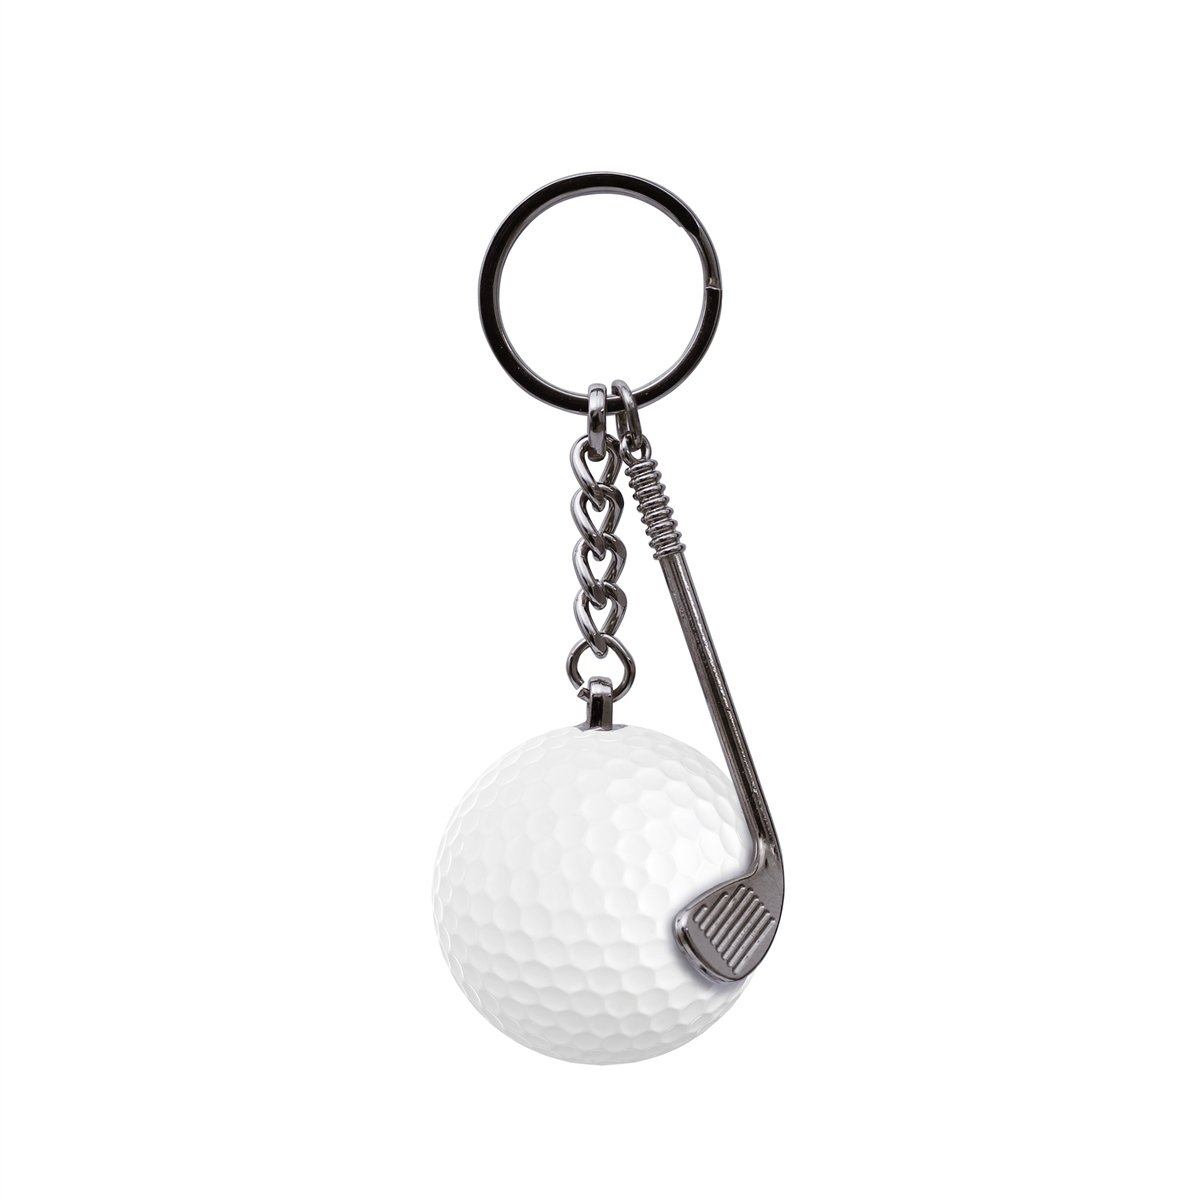 Zekupp Golf Topu Anahtarlık, El Yapımı İsimli Anahtarlık, Hediyelik  Anahtarlık, 2 Renk Seçeneği: Beyaz Kırmızı, El